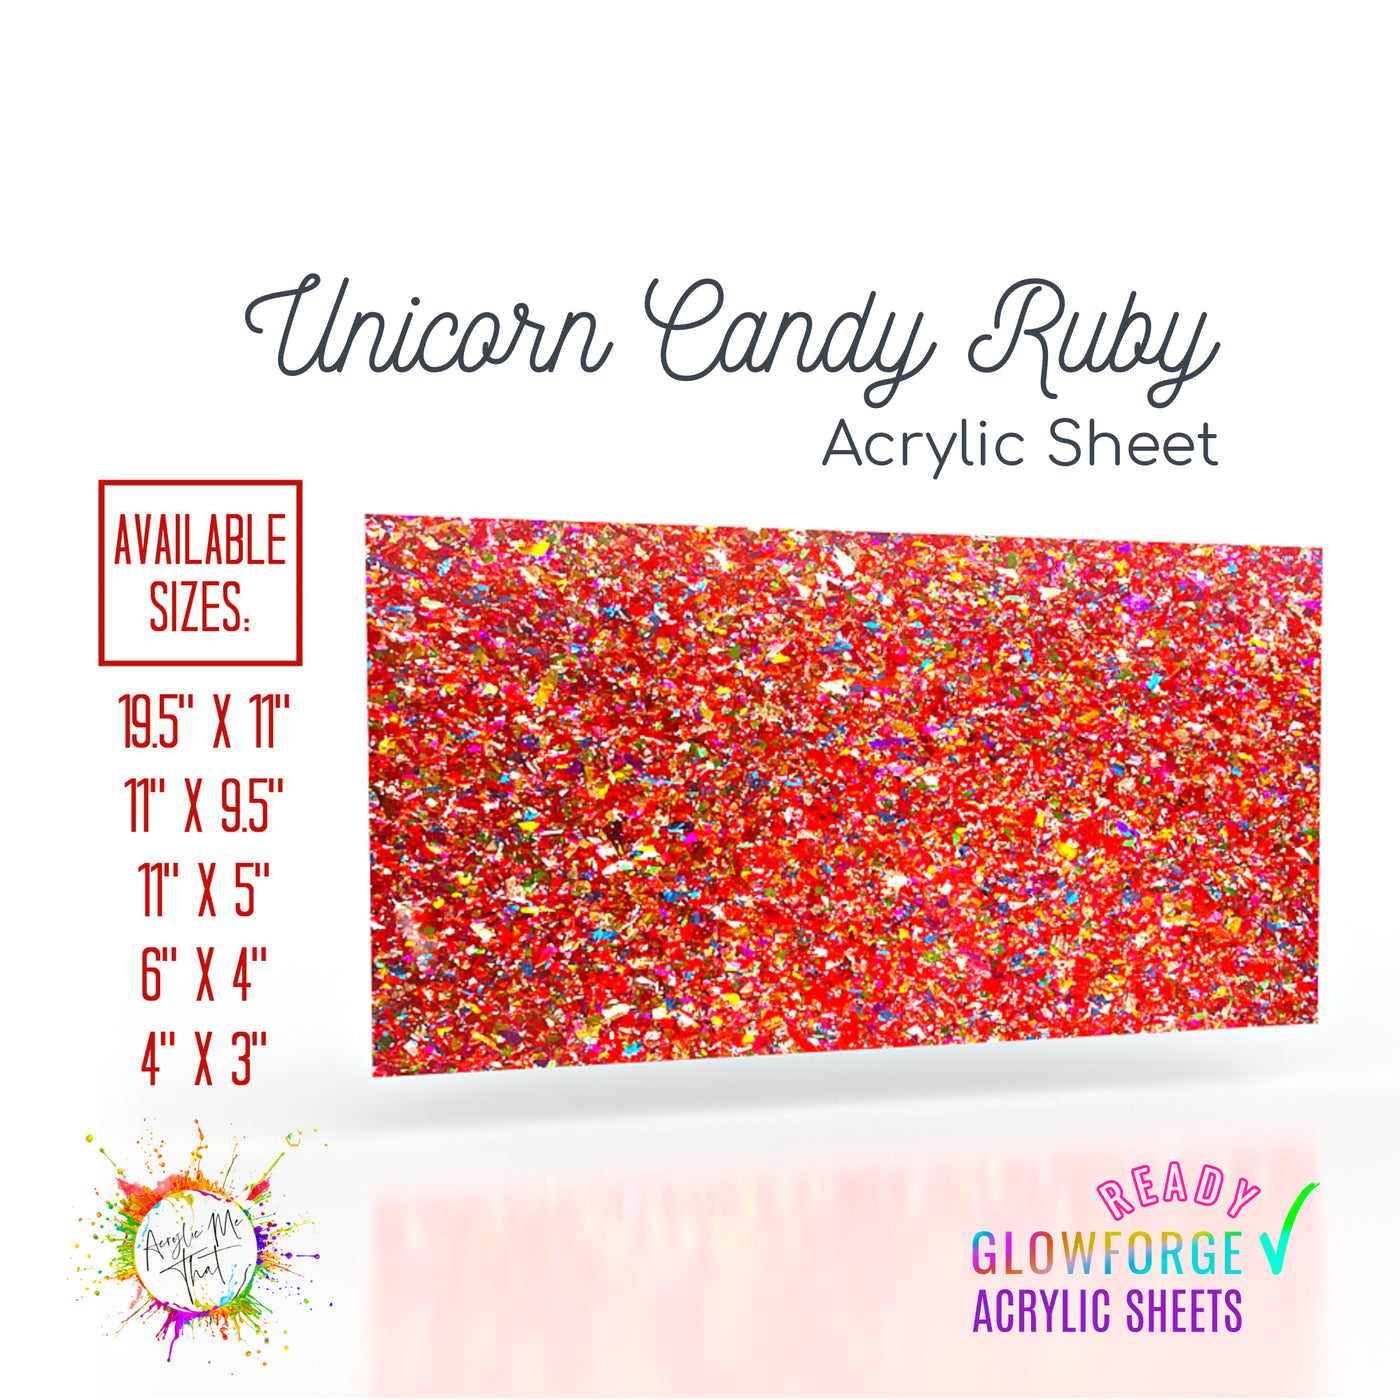 Unicorn Candy Ruby Red Chunky Glitter Acrylic Sheet